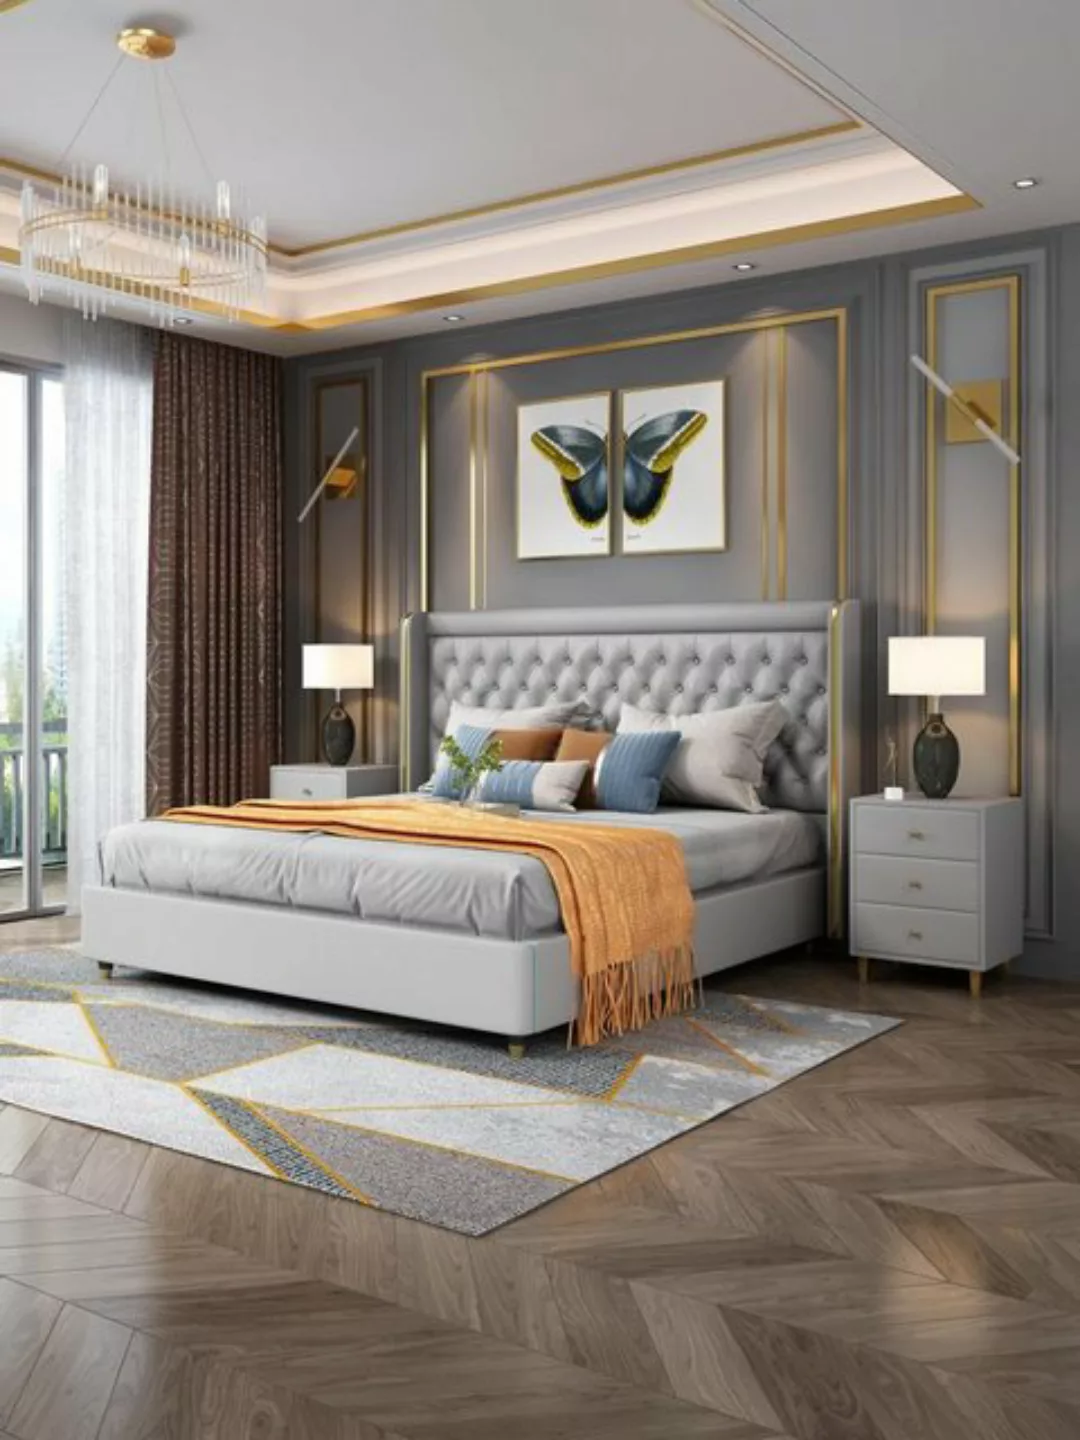 JVmoebel Bett, Klassisches Bett Doppelbett Betten Holz Landhaus Stil Echtes günstig online kaufen